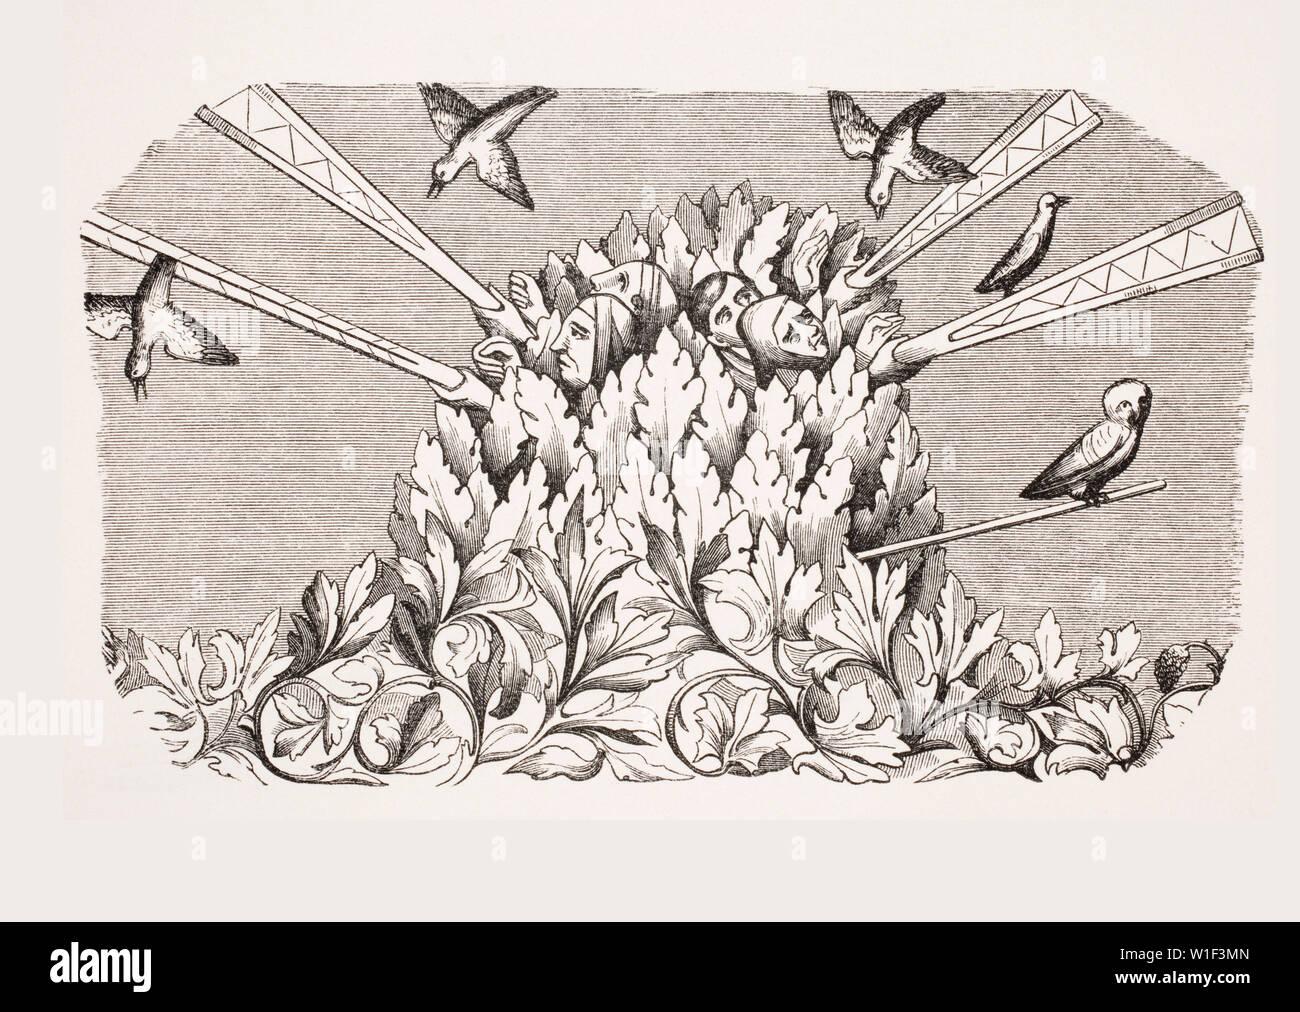 Bird-Catching avec une machine comme un bras long. 19e siècle reproduction d'une miniature dans un manuscrit du 14ème siècle Livre du Roy Modus Banque D'Images